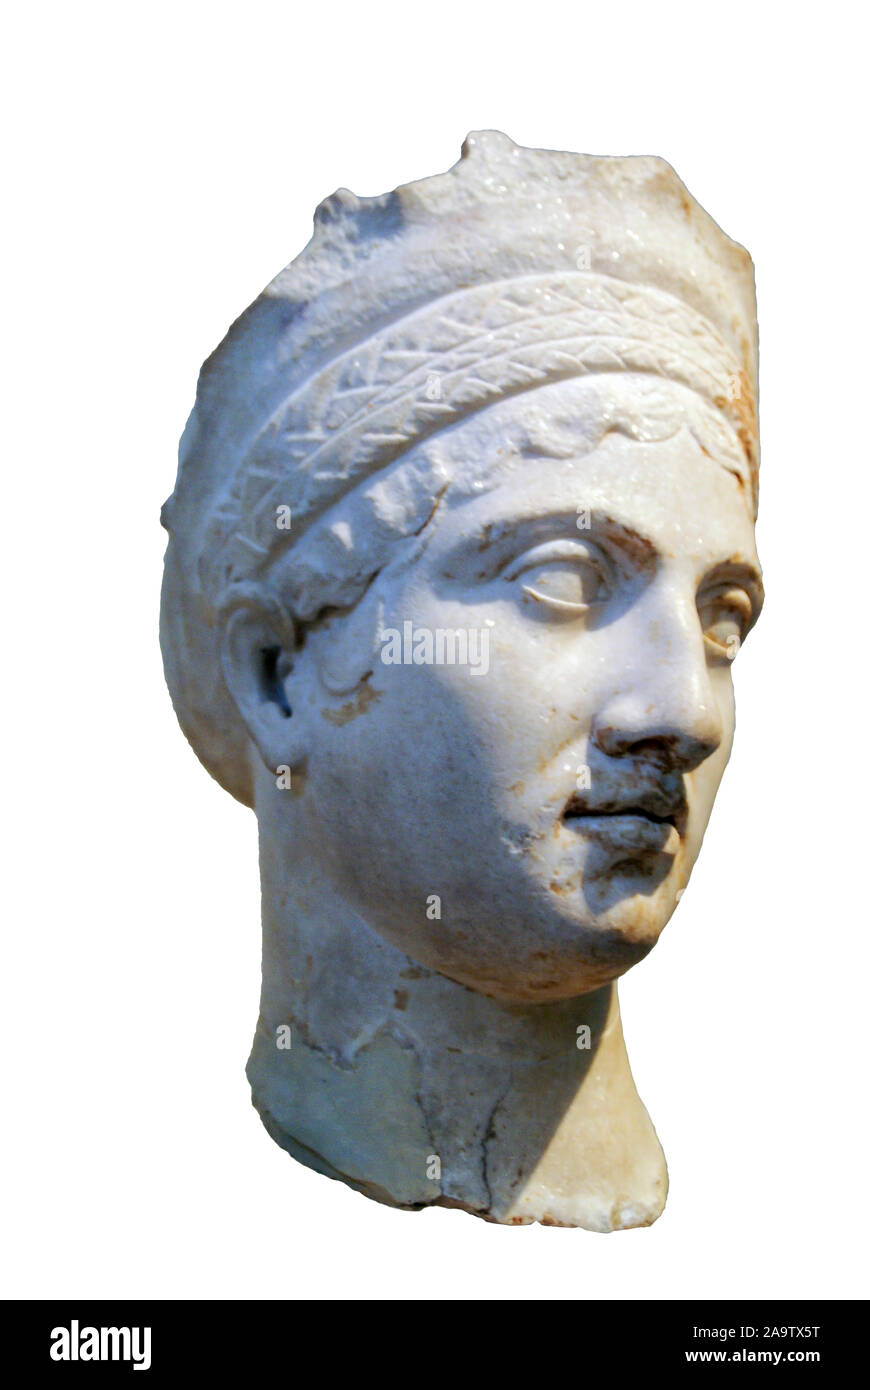 Antike römische Büste einer Frau, aus Kreta, eventuell Plotina, Frau Trajan - Nationalen Archäologischen Museum, Athen, Griechenland Stockfoto